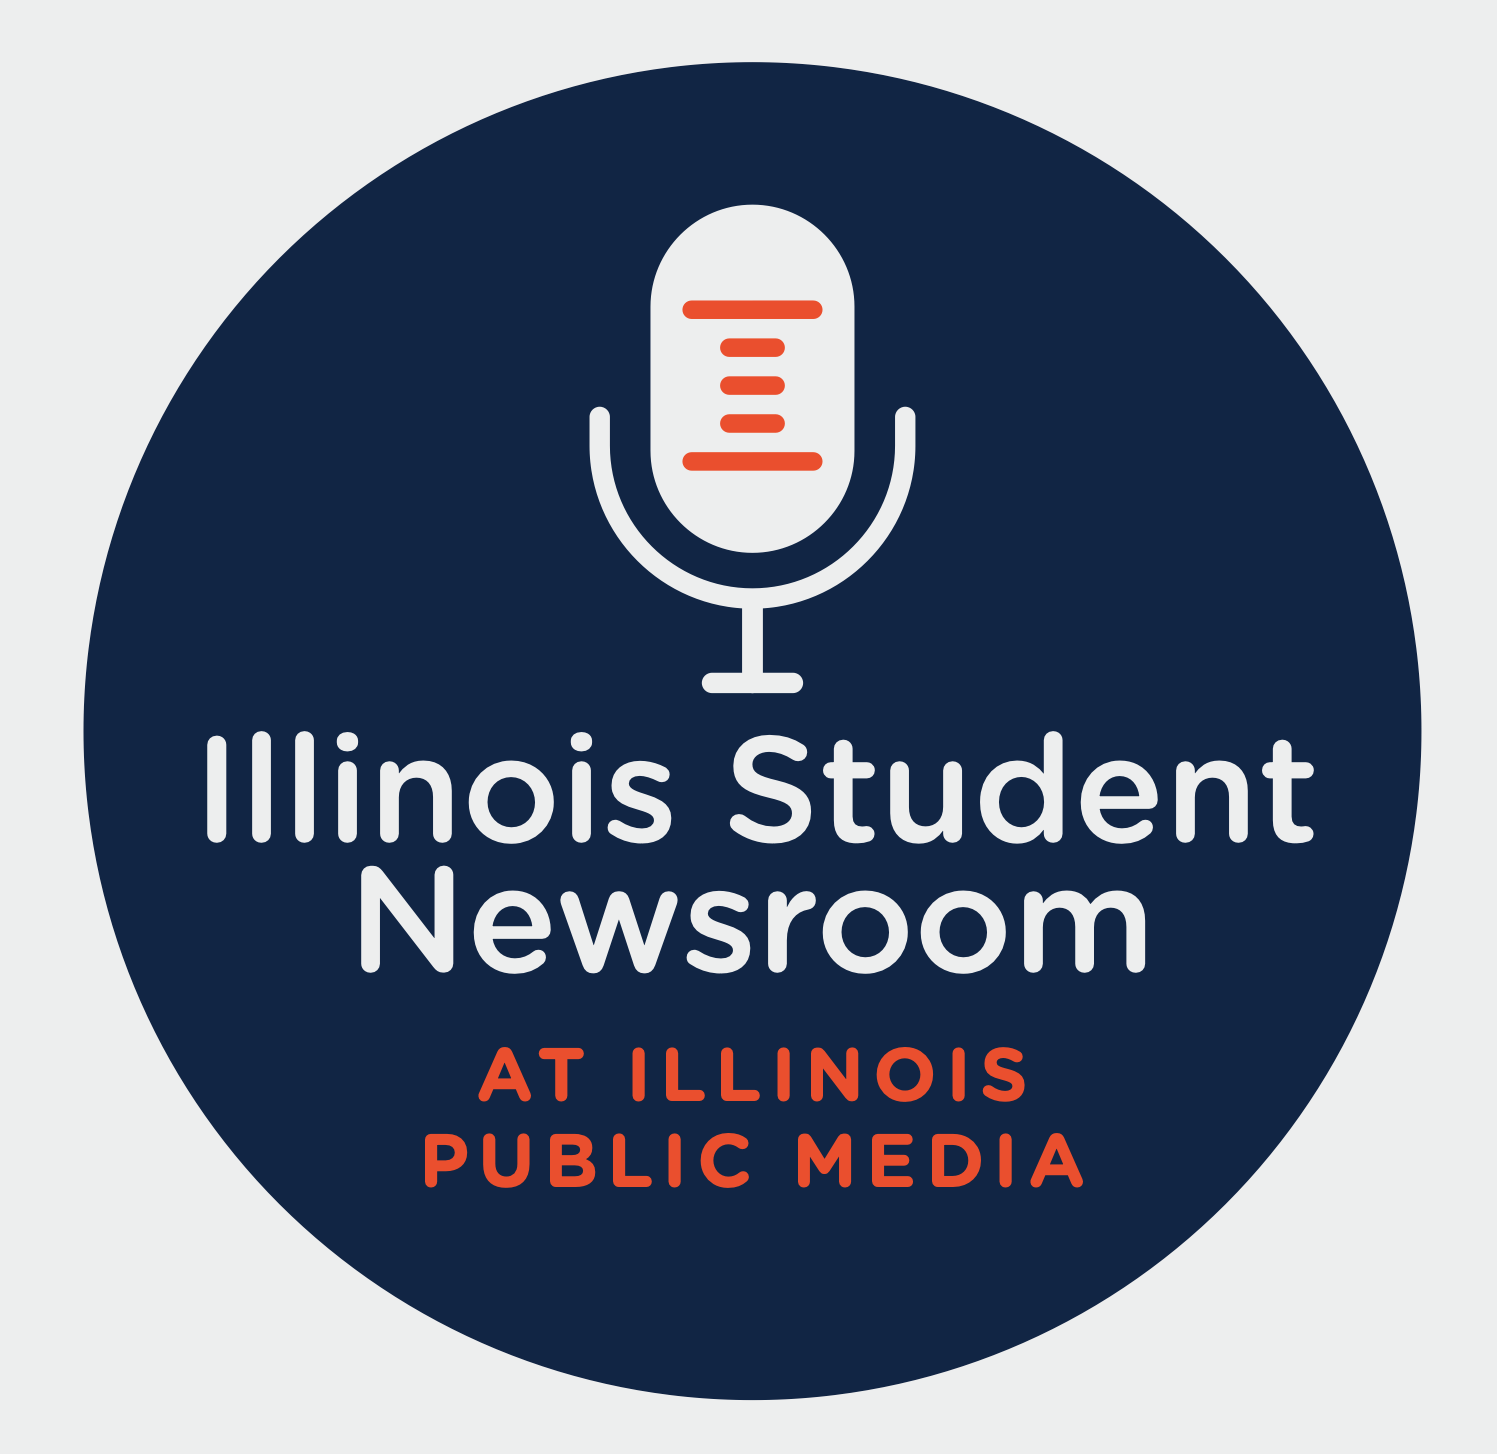   
																Meet the Student Newsroom Team 
															 